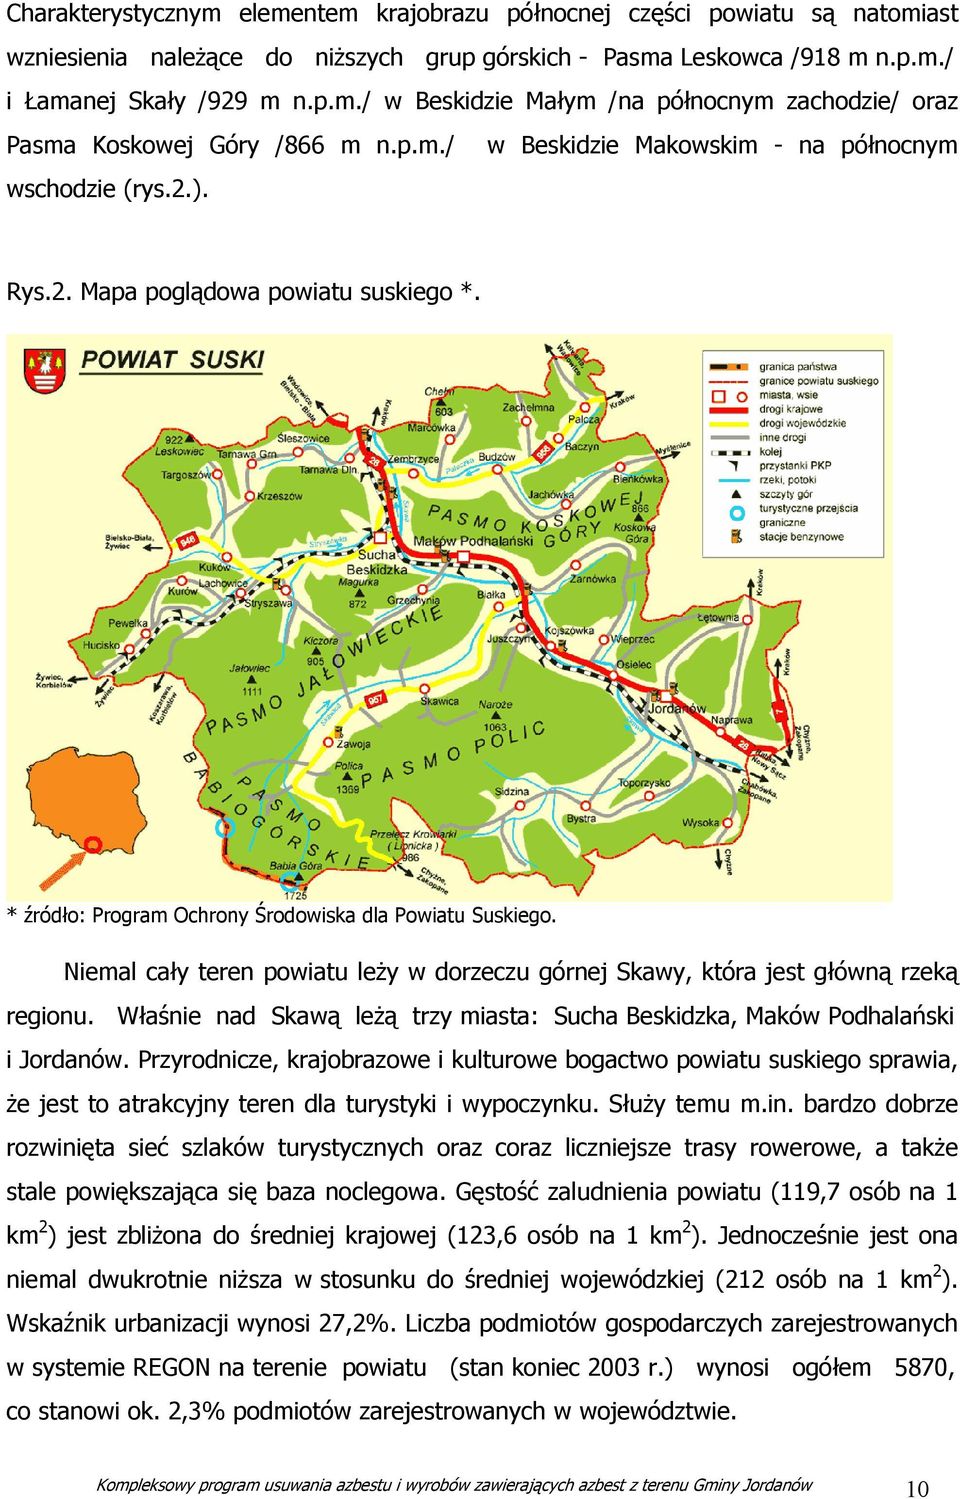 Niemal cały teren powiatu leży w dorzeczu górnej Skawy, która jest główną rzeką regionu. Właśnie nad Skawą leżą trzy miasta: Sucha Beskidzka, Maków Podhalański i Jordanów.